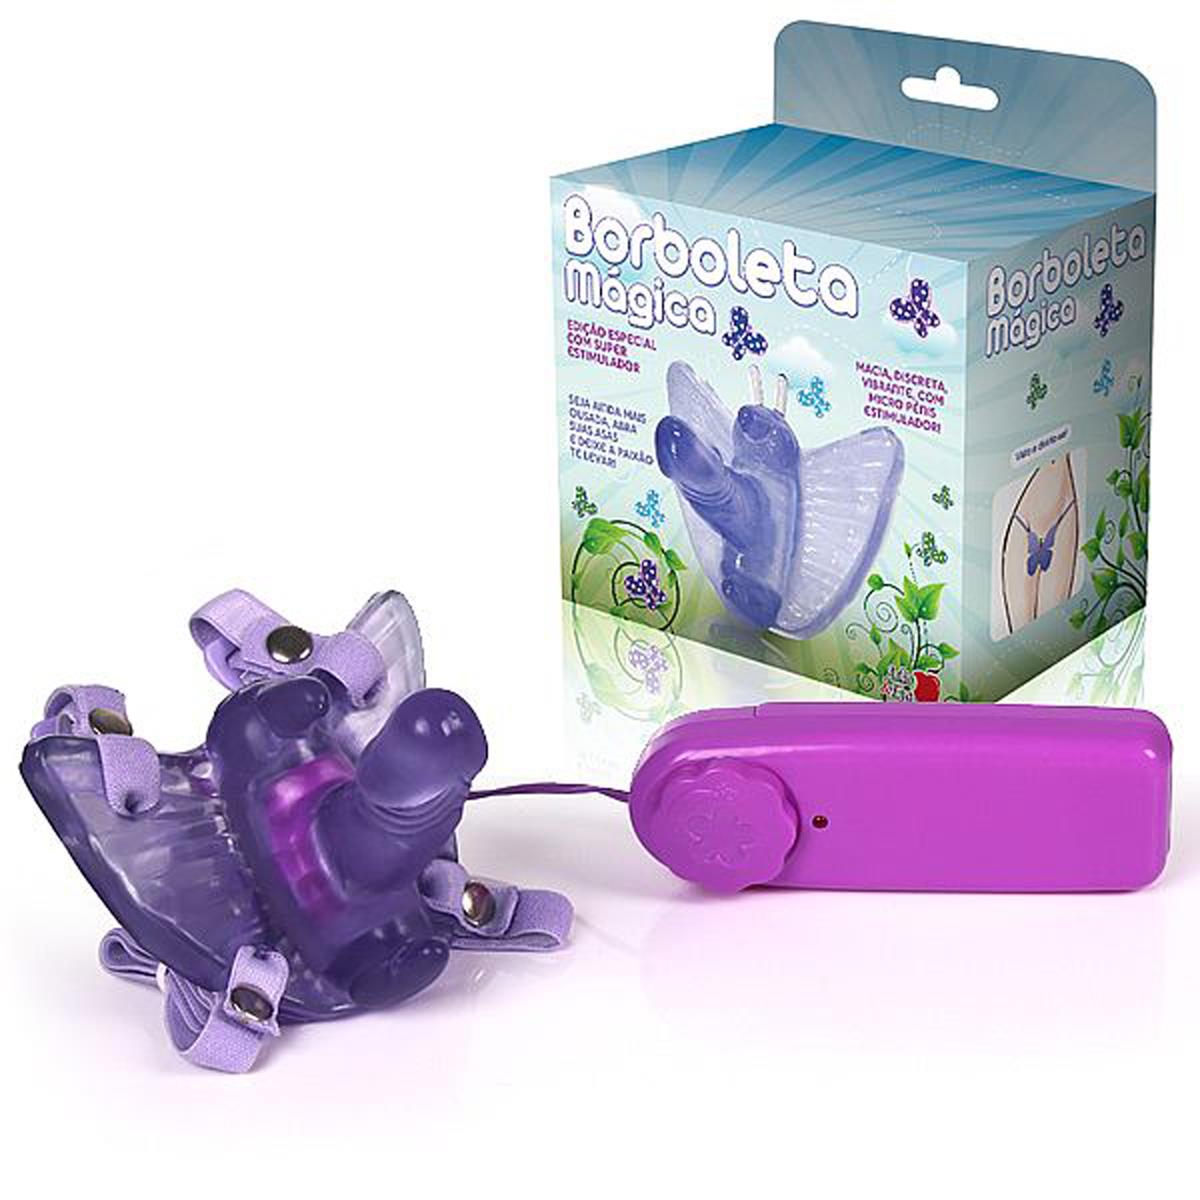 Borboleta Mágica Violeta Edição Especial com Super Estimulador Adão e Eva - Miess